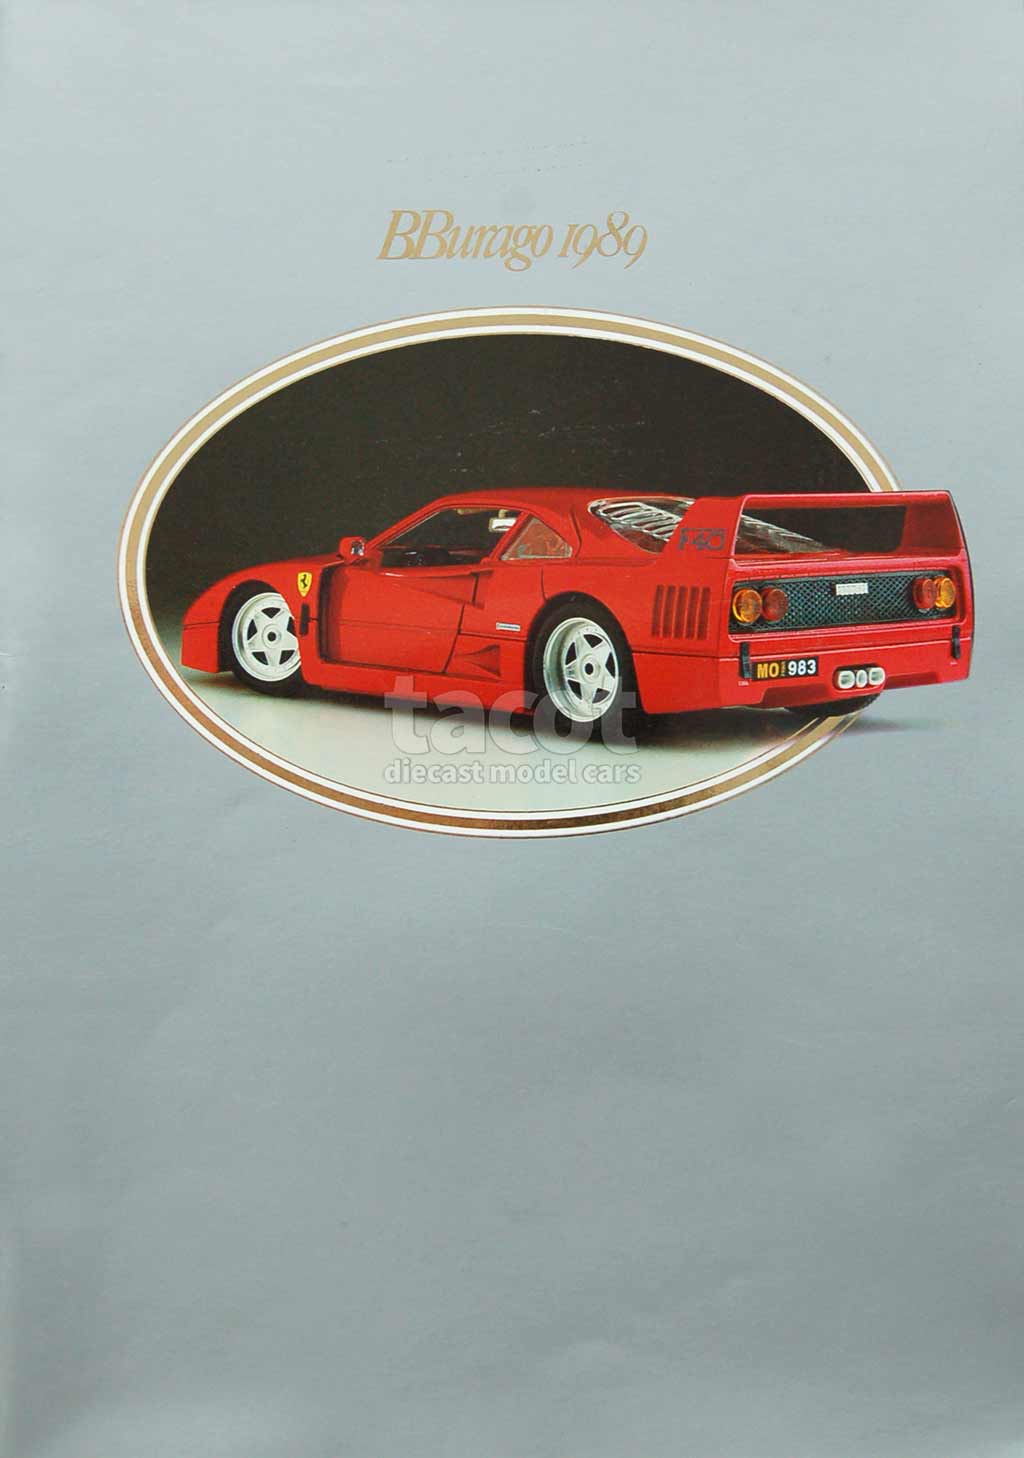 417 Catalogue Burago 1989